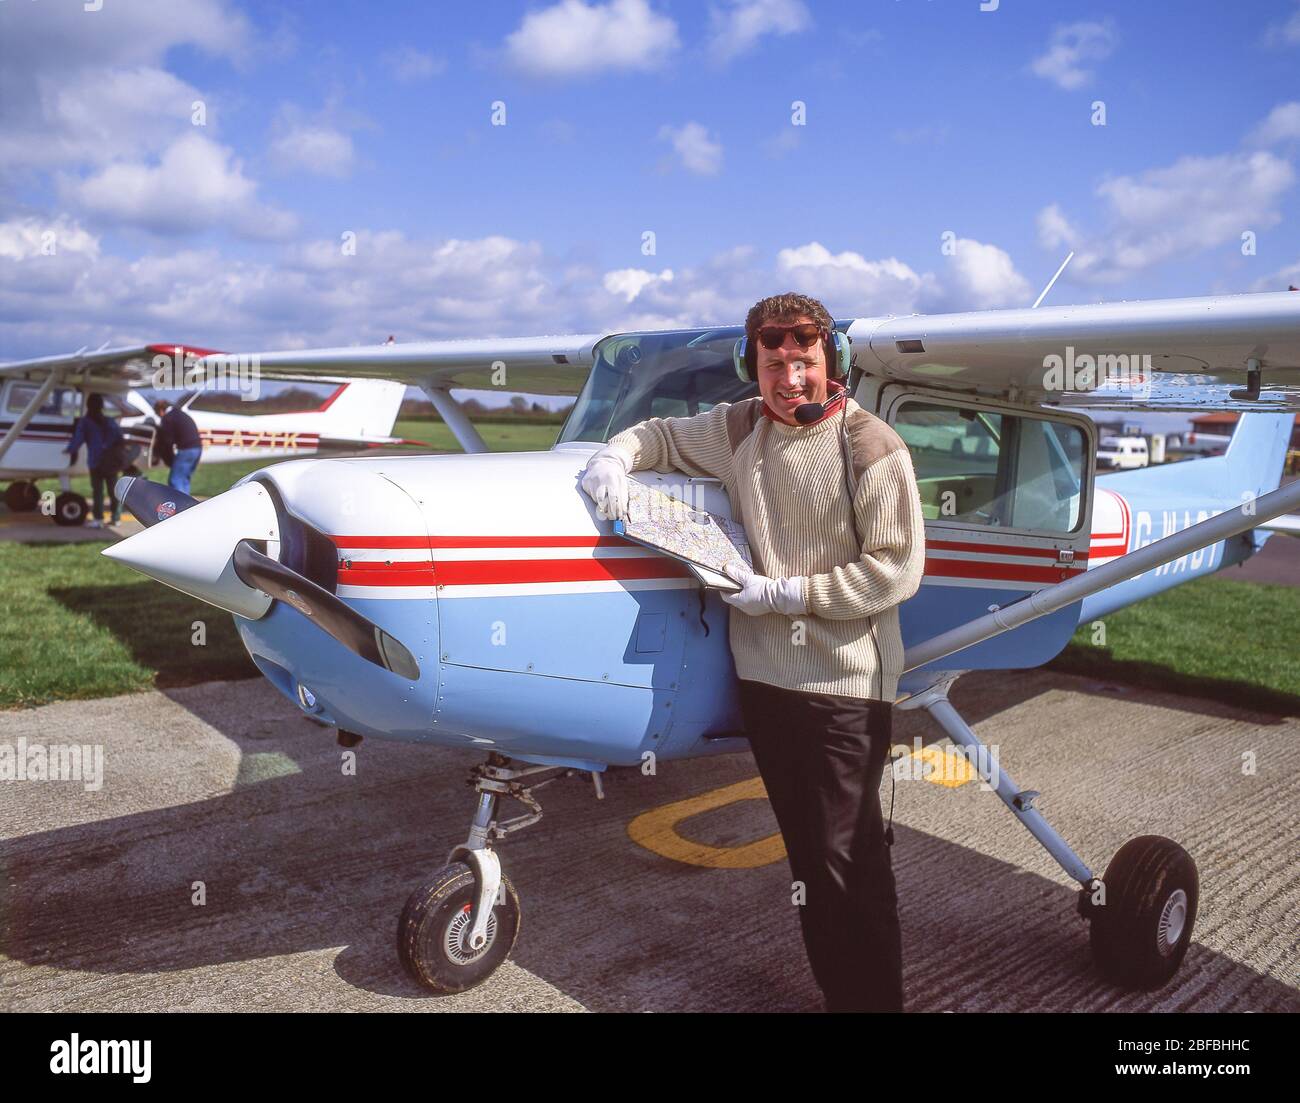 Männlicher Pilot neben einem Cessna 172 Skyhawk Flugzeug, Blackbushe Airport, London Road, Blackwater, Hampshire, England, Großbritannien Stockfoto